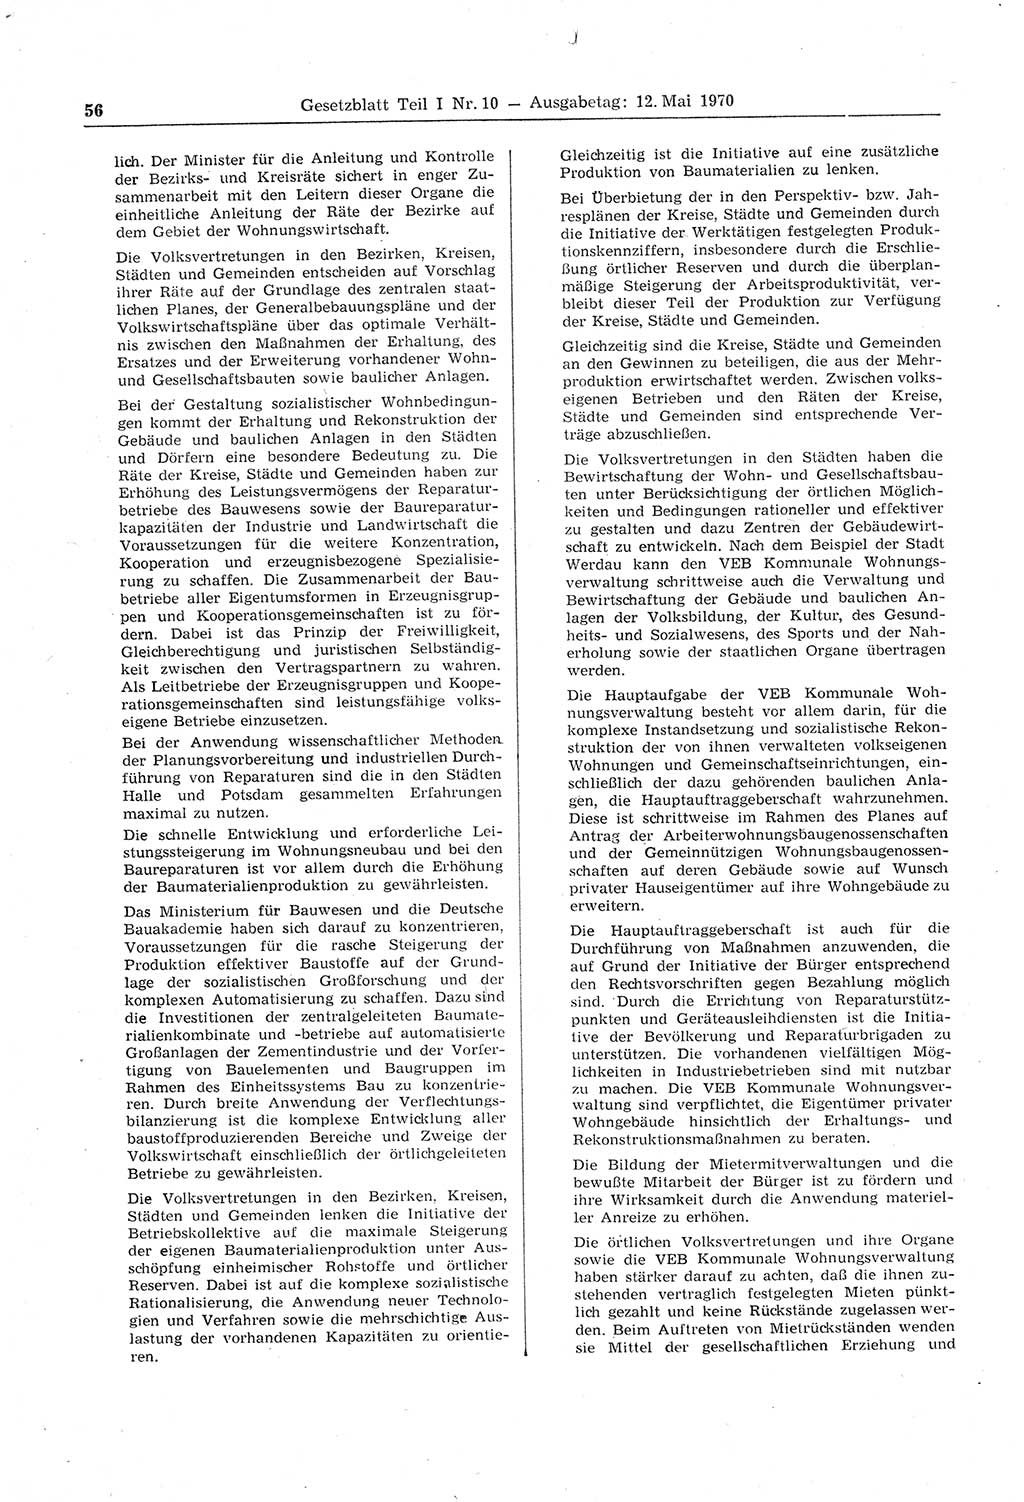 Gesetzblatt (GBl.) der Deutschen Demokratischen Republik (DDR) Teil Ⅰ 1970, Seite 56 (GBl. DDR Ⅰ 1970, S. 56)